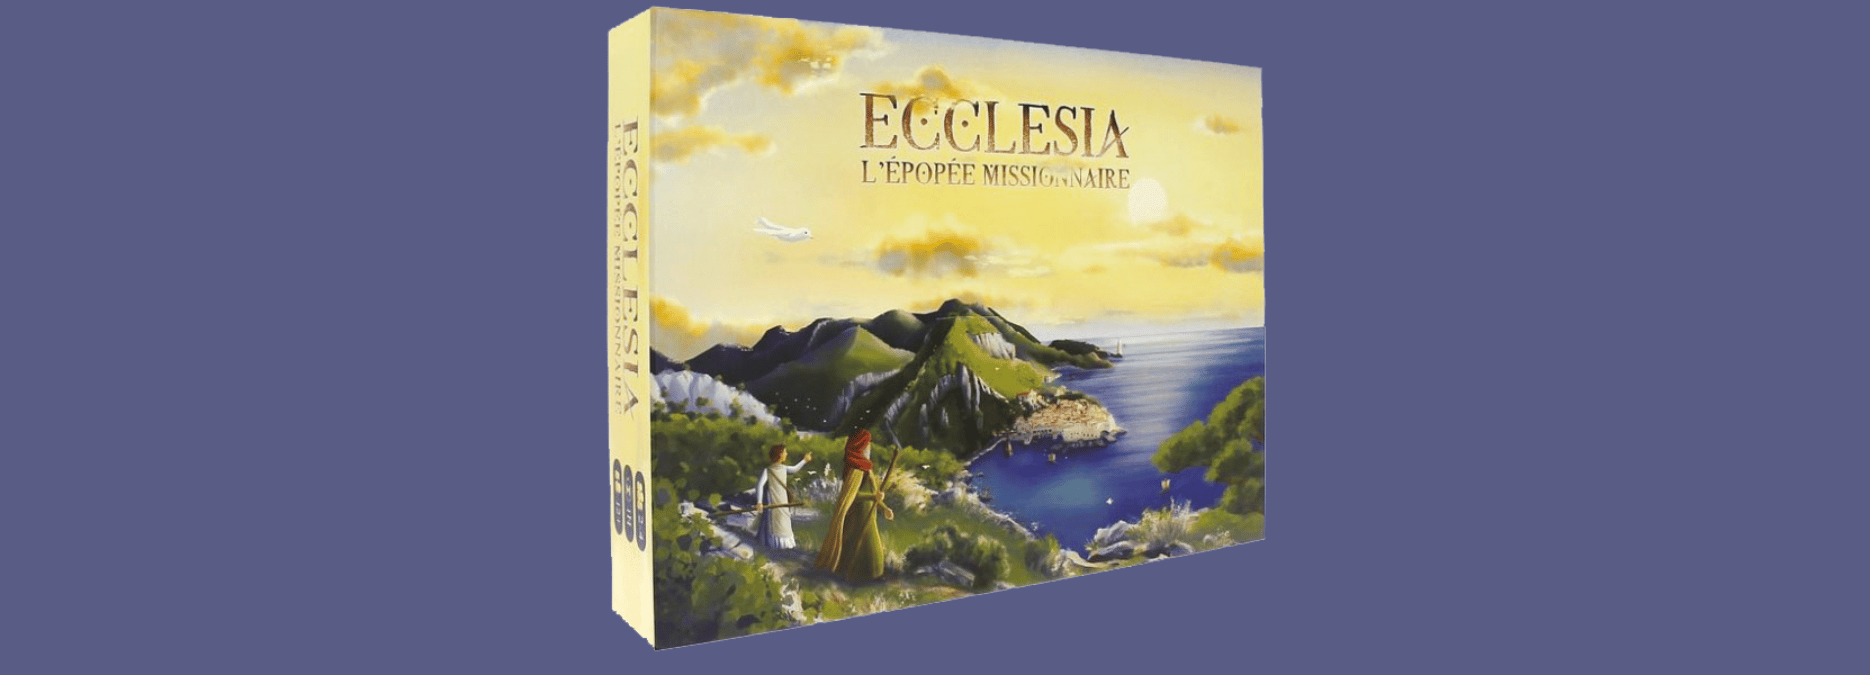 Ecclesia, l’épopée missionnaire